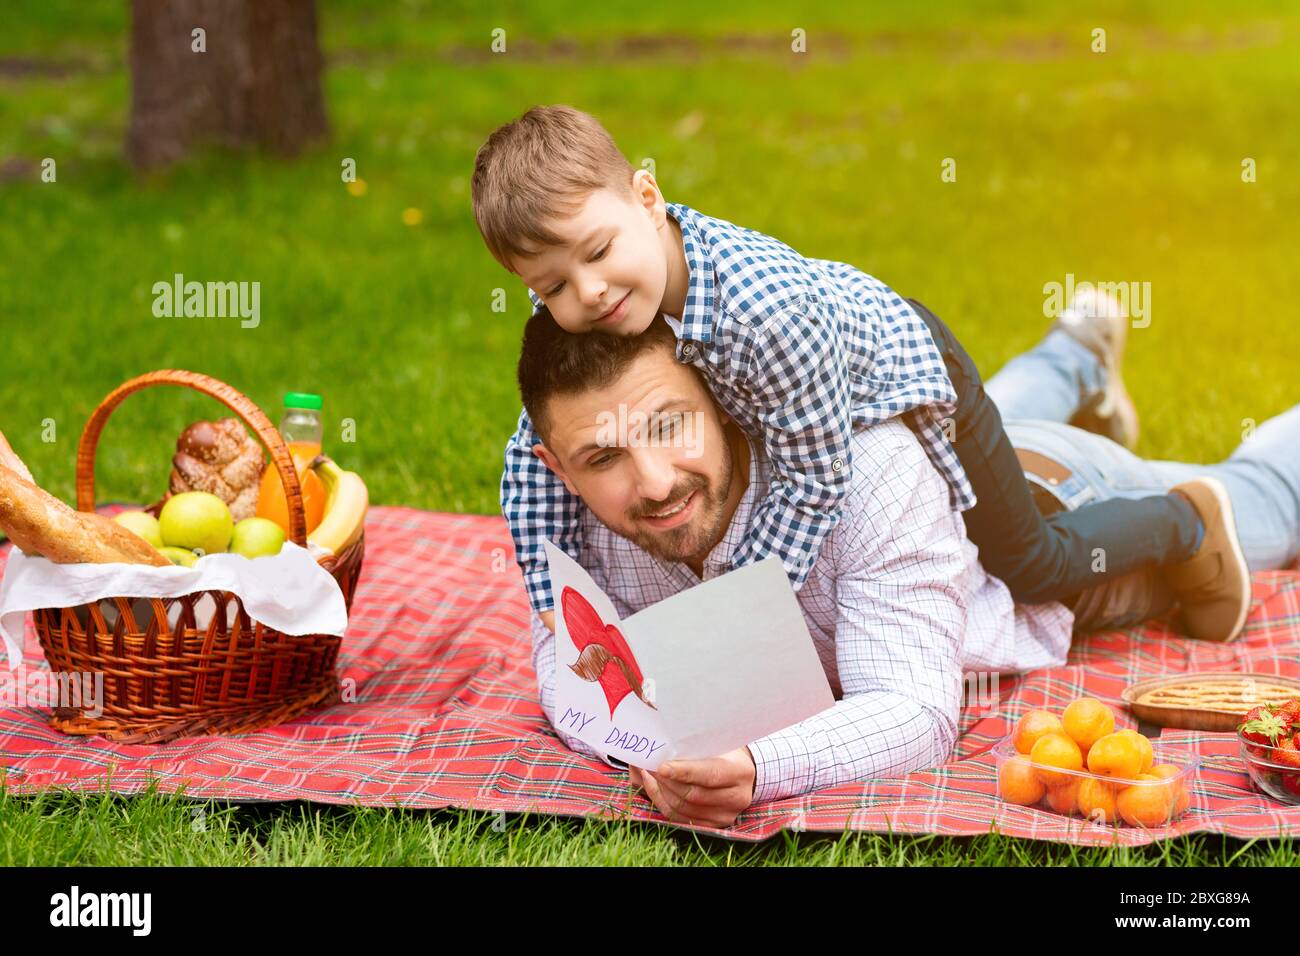 Bonne journée du Père. Un enfant mignon embrassant son père, pendant qu'il lit une carte de vœux sur un pique-nique en forêt Banque D'Images